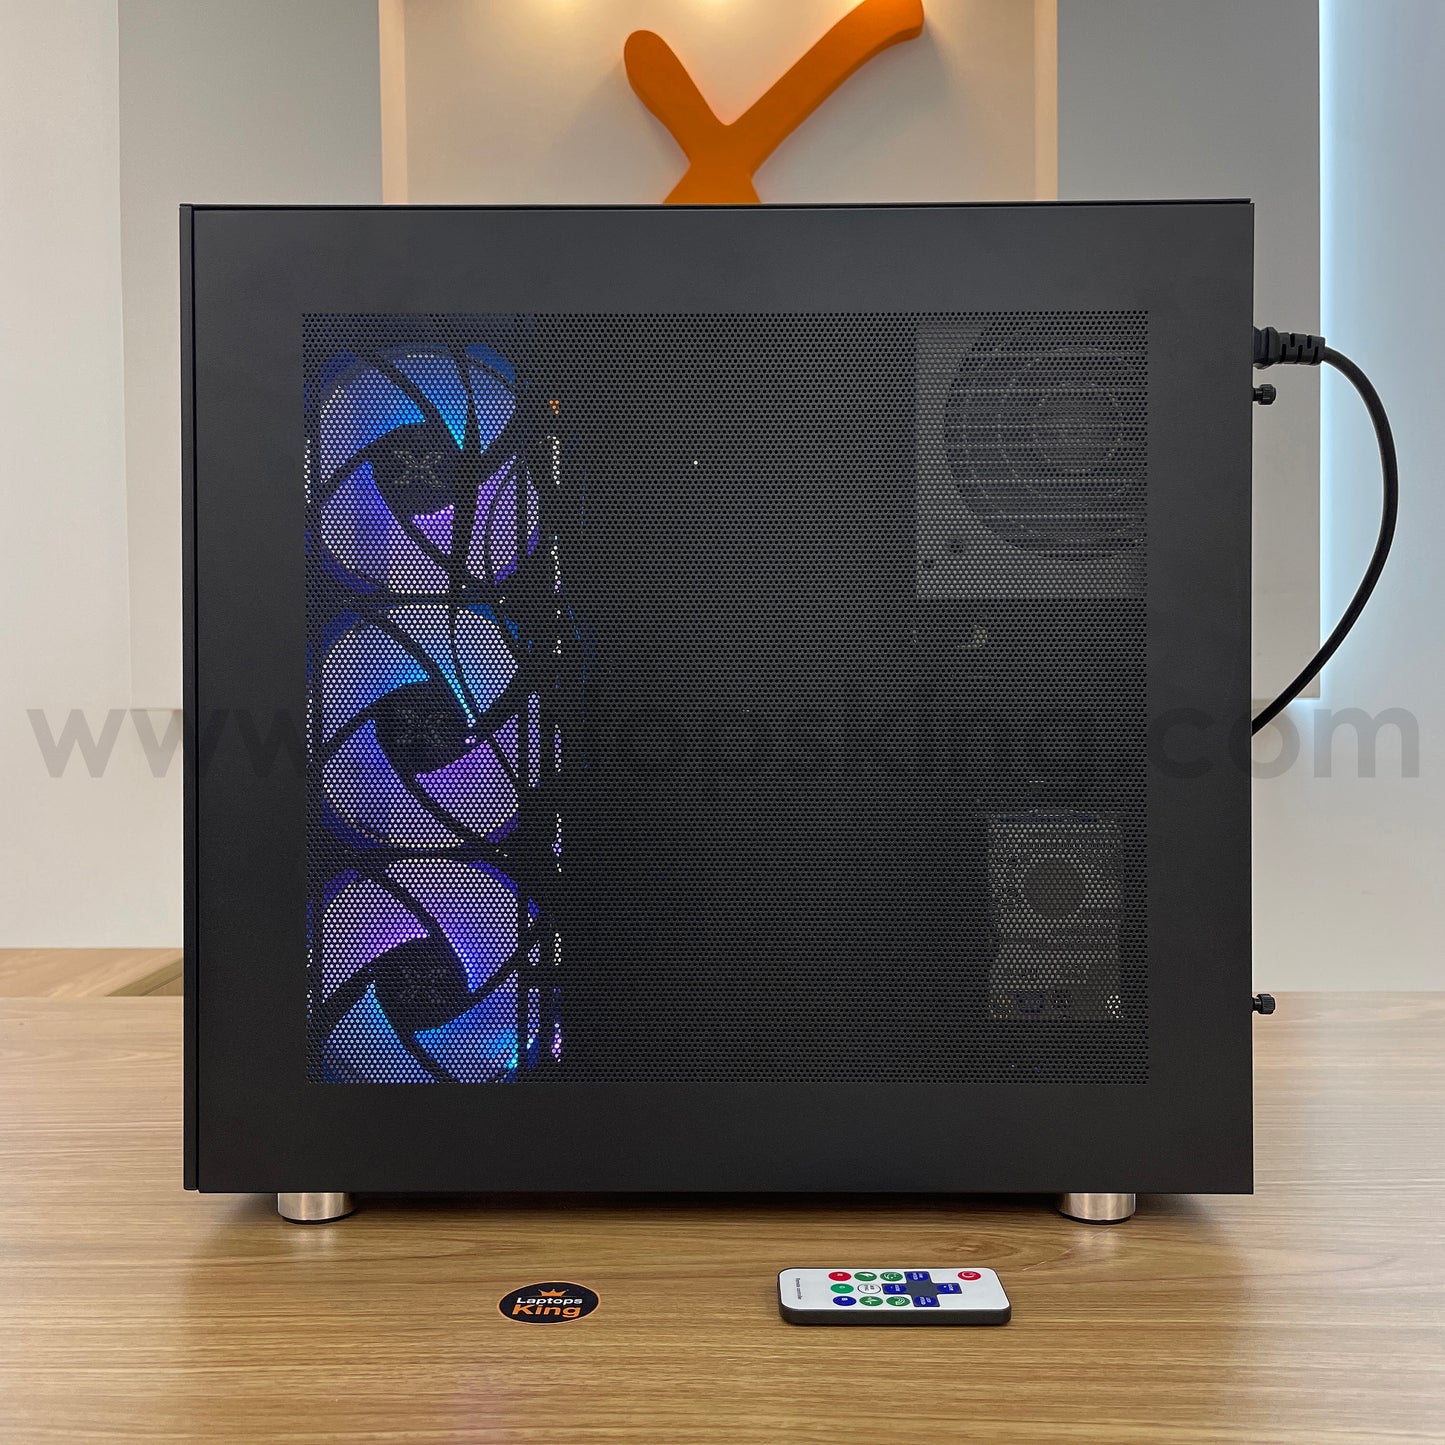 Xigmatek Aquarius Pro i9-12900k Rtx 3090 Gaming Desktop (Brand New)